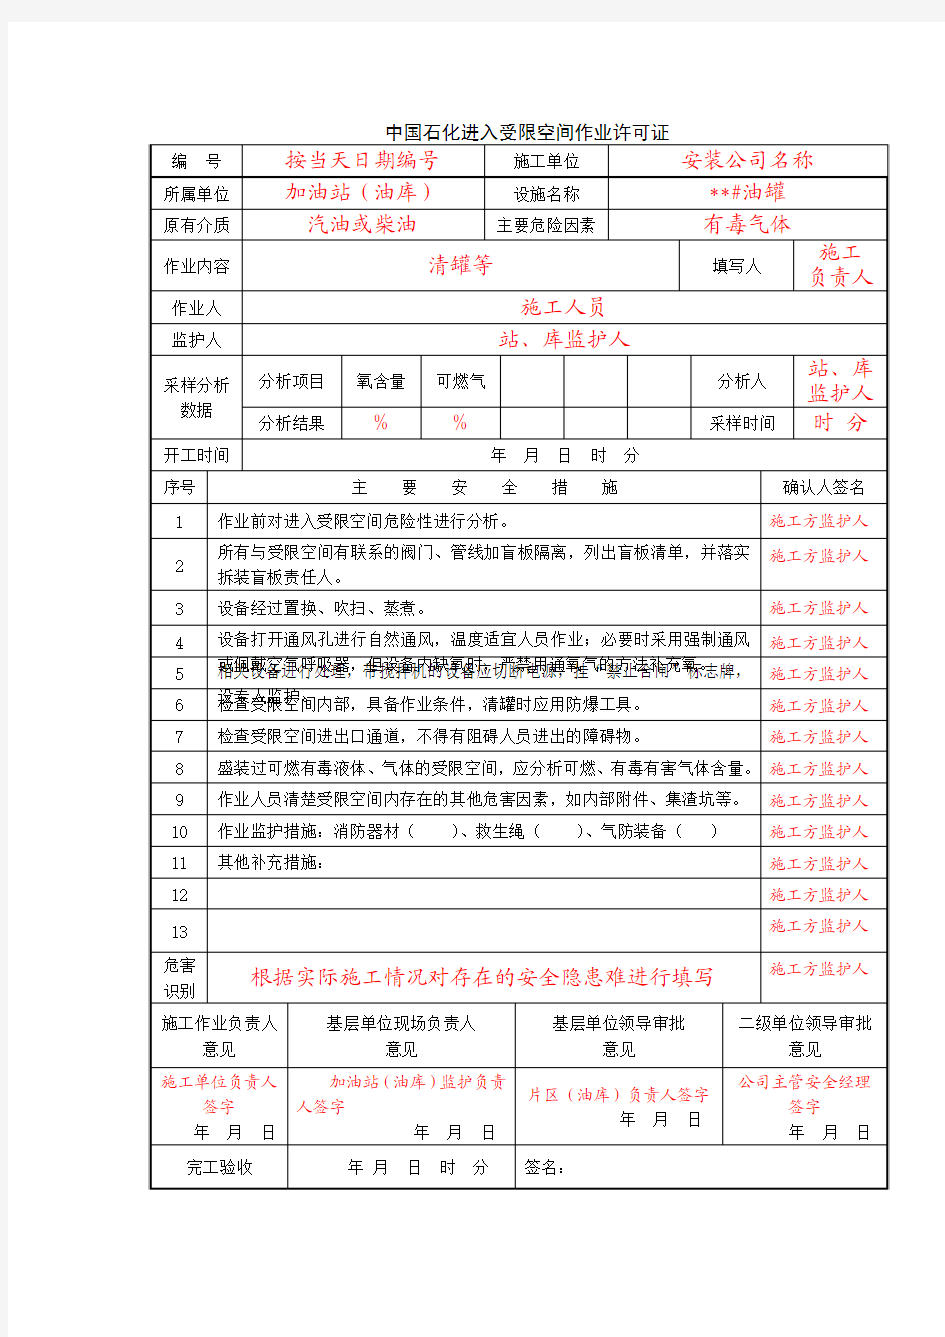 中国石化进入受限空间作业许可证(模板)